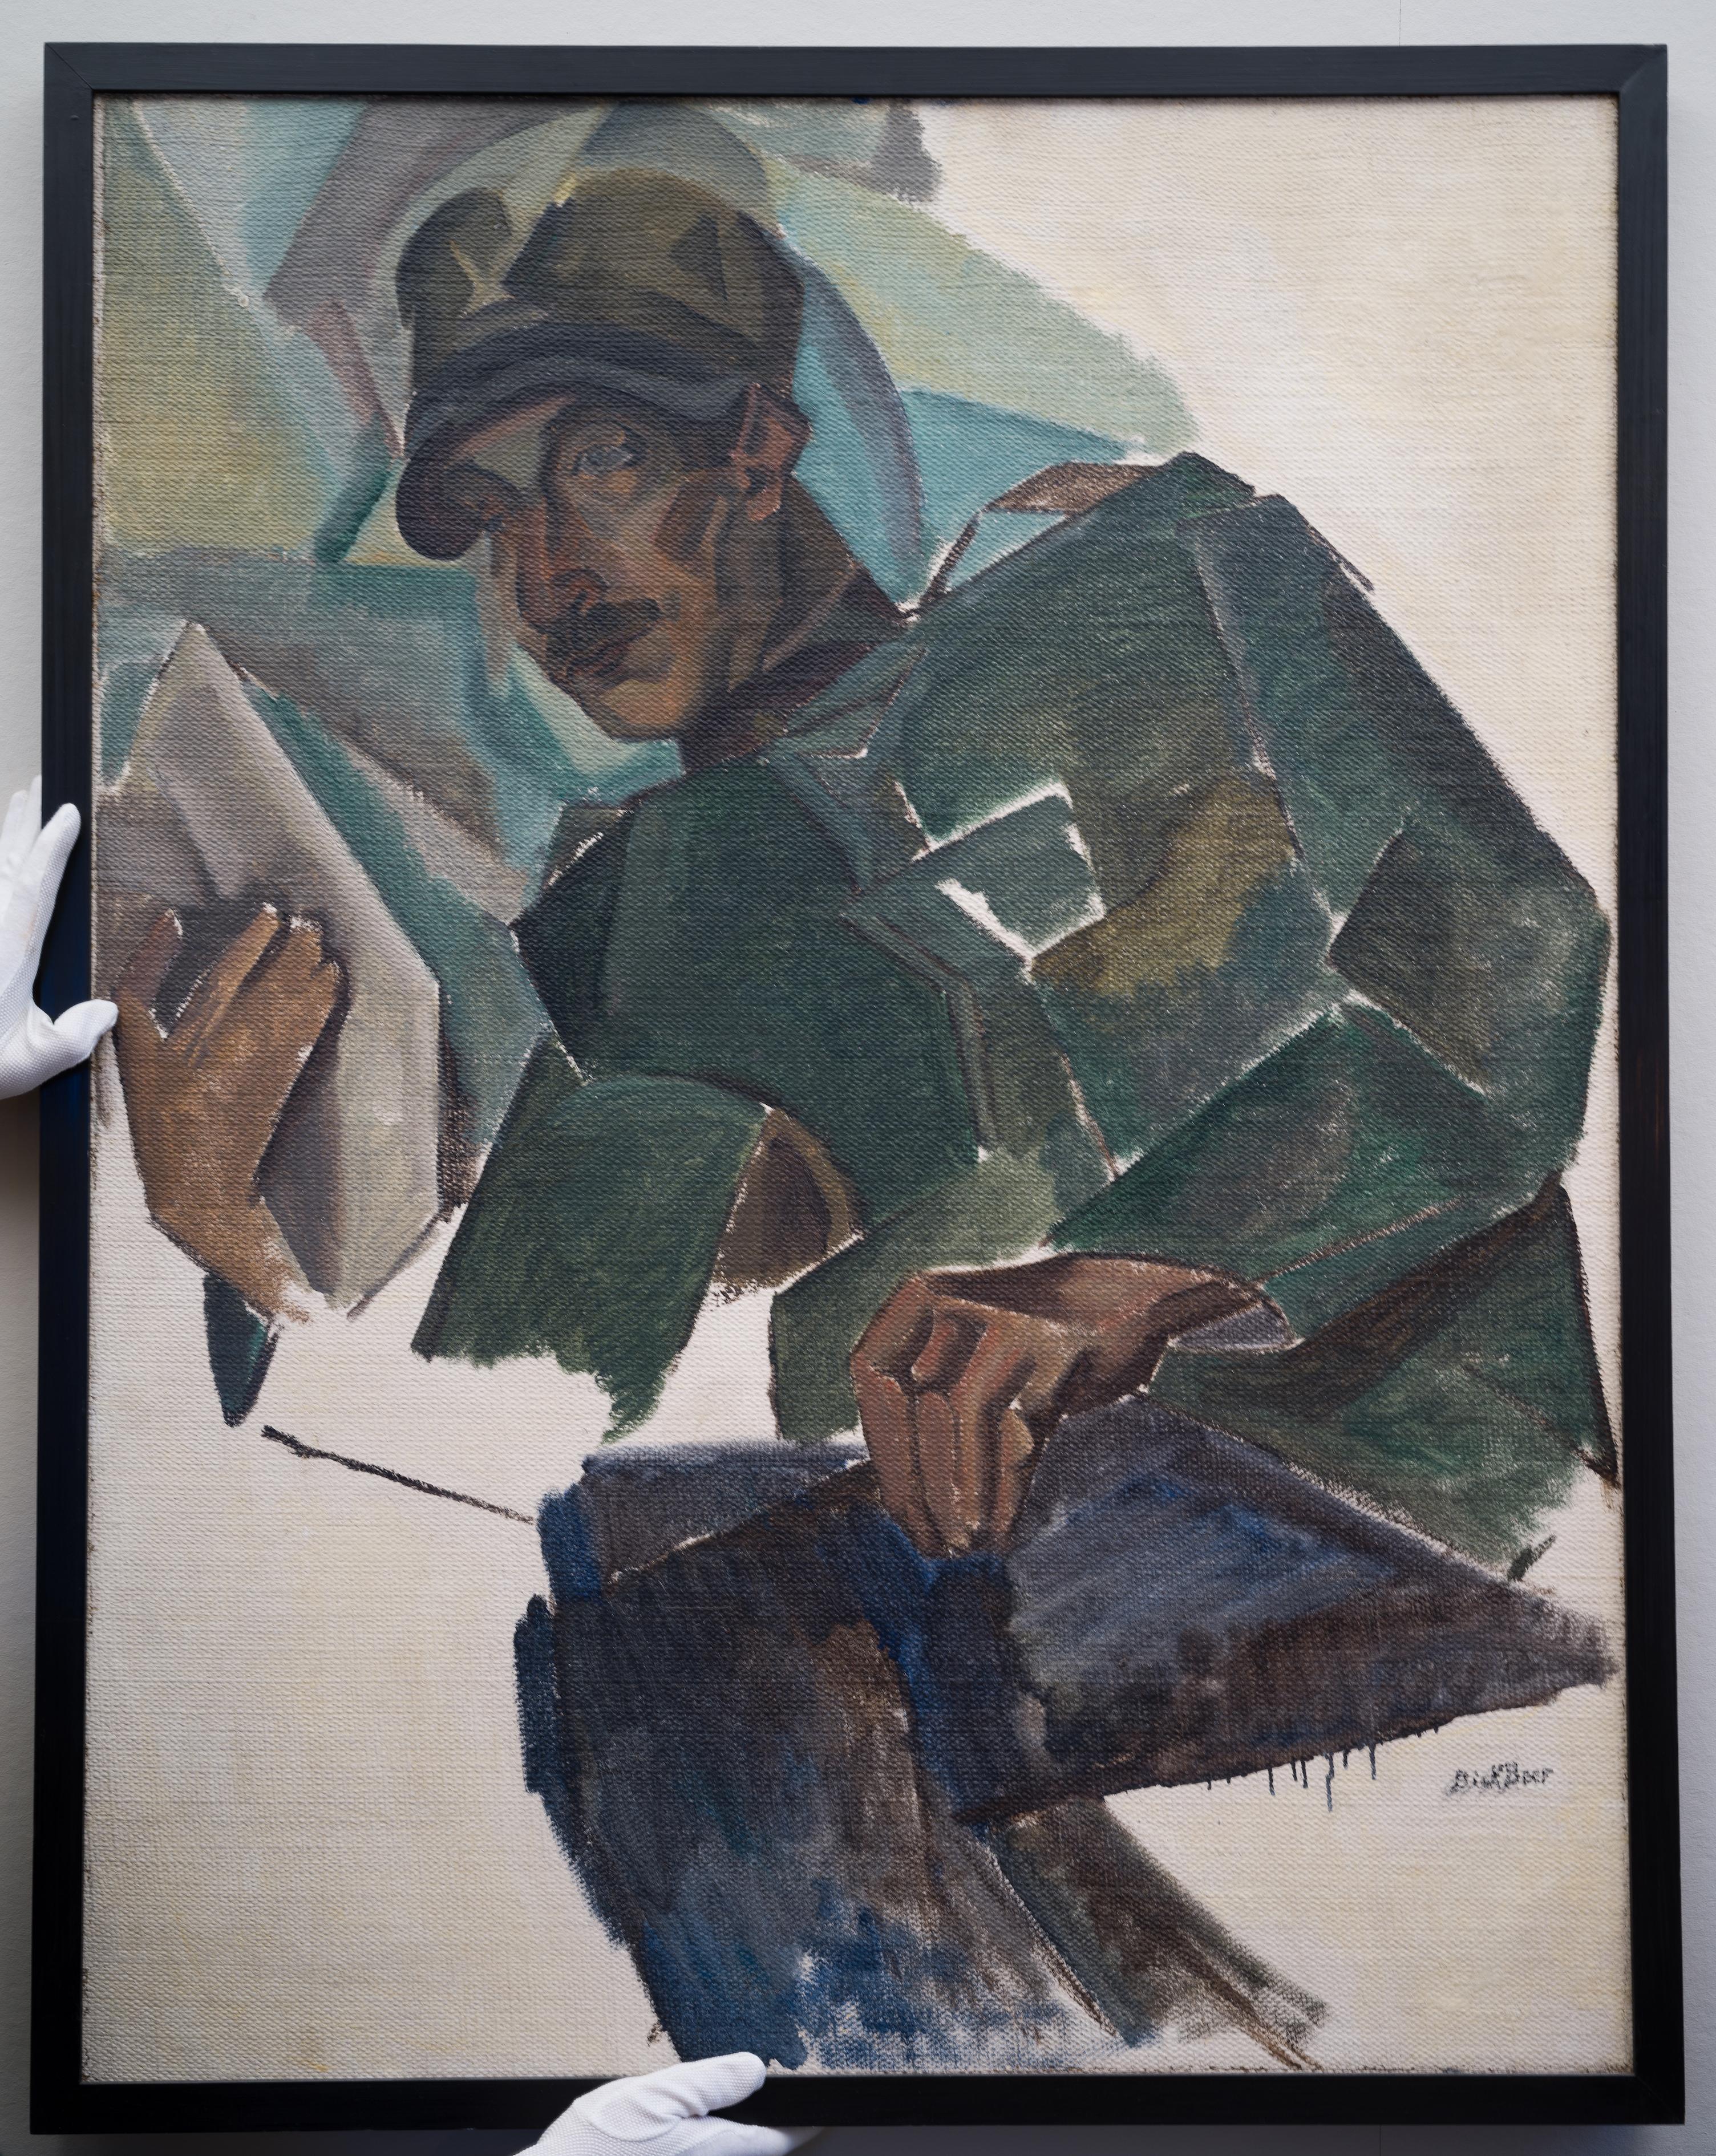 Kubistisches Porträt von Gabriele Varese (in italienischer Uniform), 1919 (Kubismus), Painting, von Dick Beer